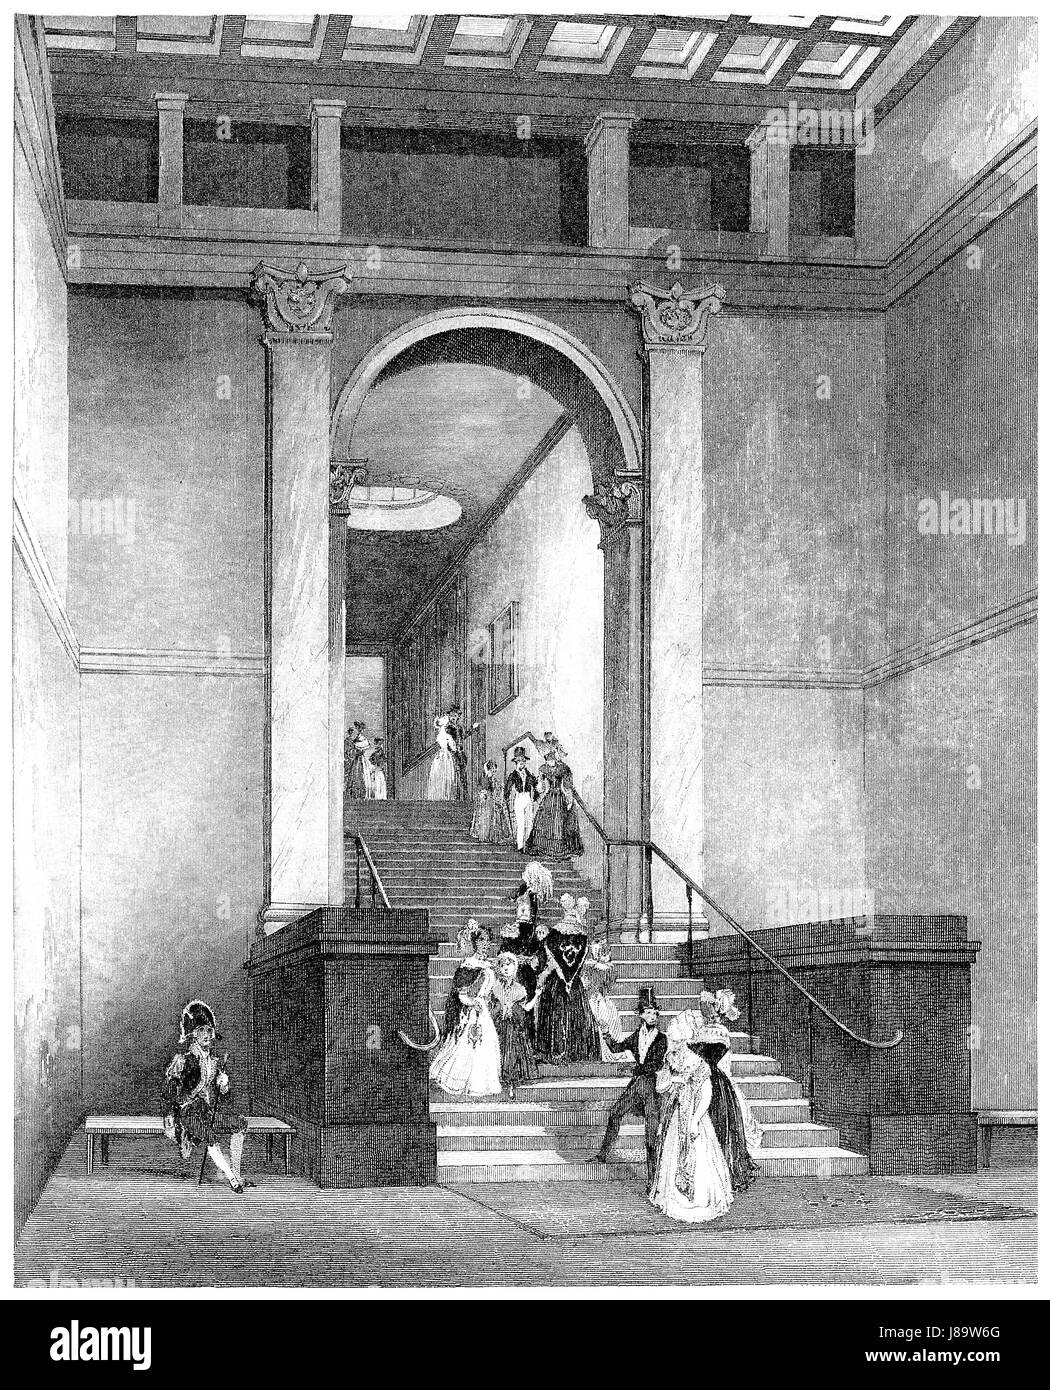 Viktorianische Gravur des Eingangs in die National Gallery, London. Aus dem Buch London Interieurs, in den 1840er Jahren von Joseph Mead veröffentlicht. Stockfoto